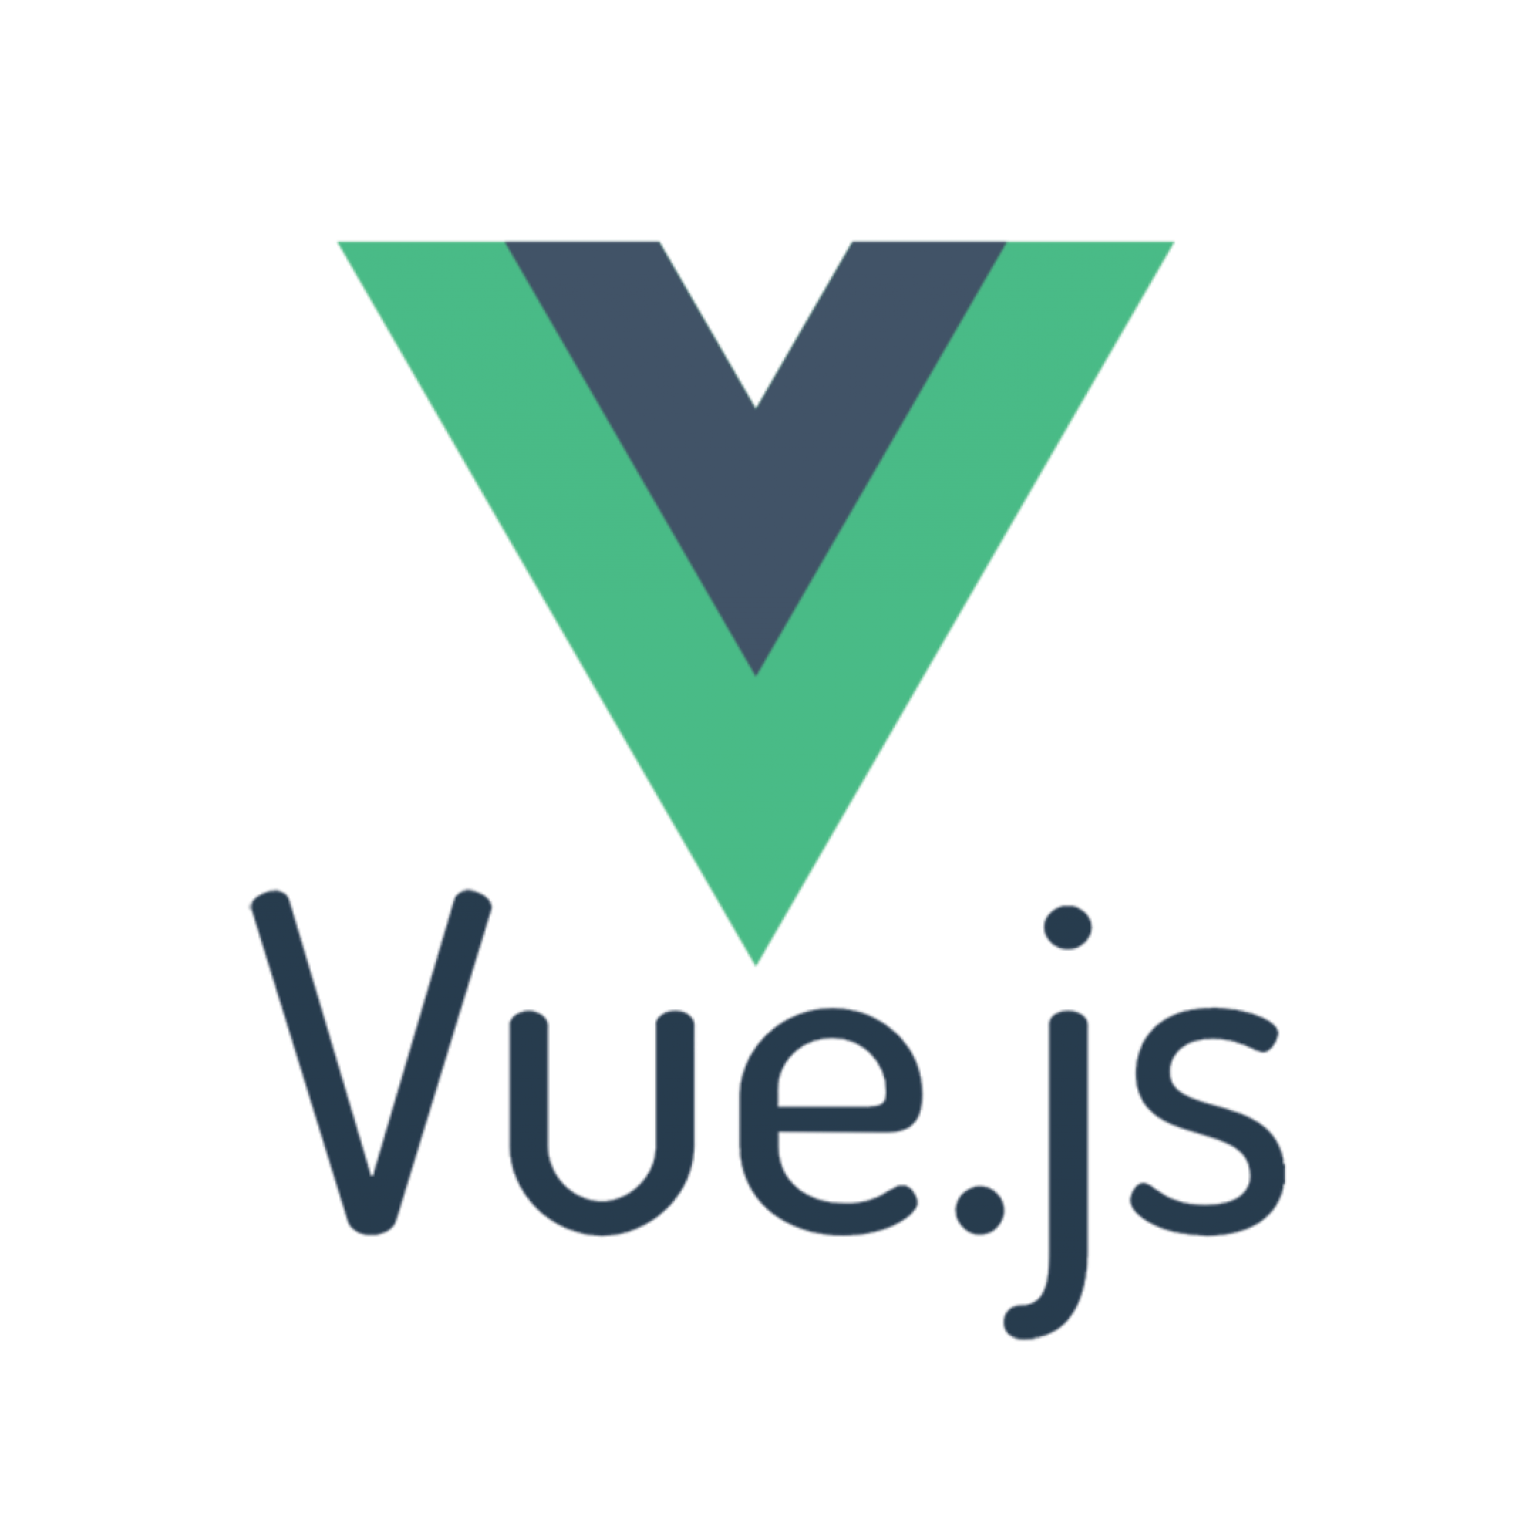 Vue.js Logo für Webentwicklung